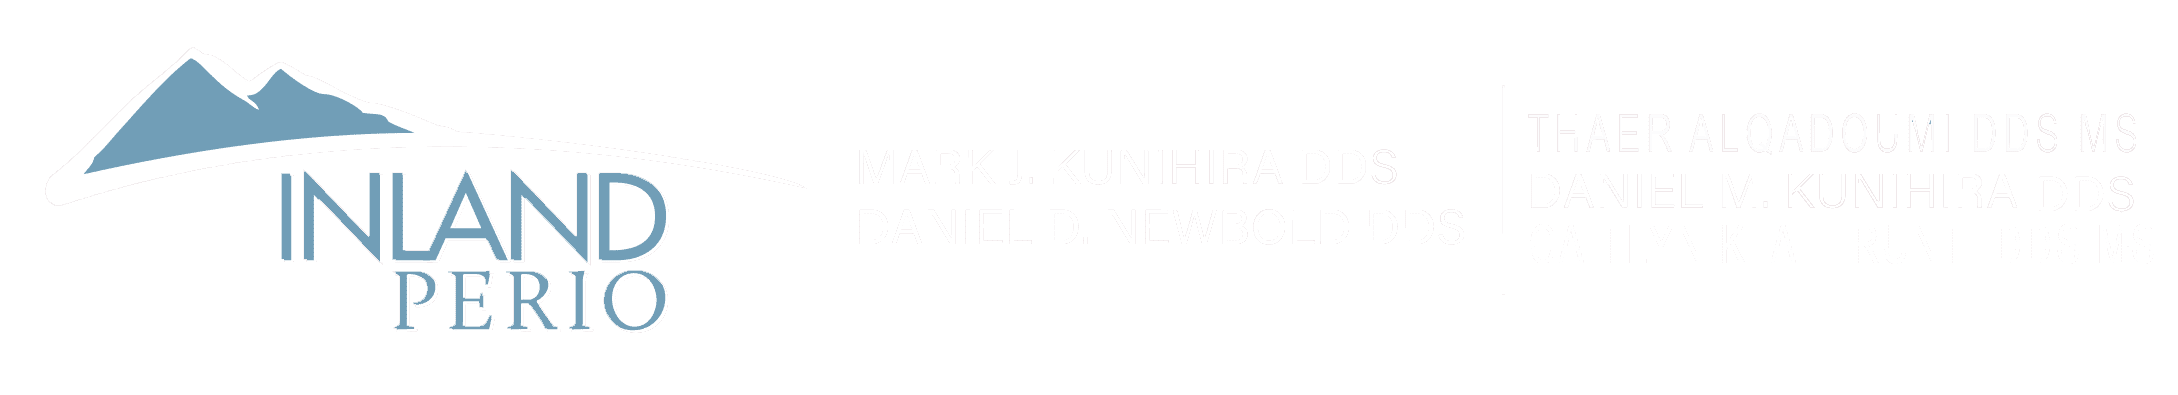 Daniel M Kunihira DDS & Associates